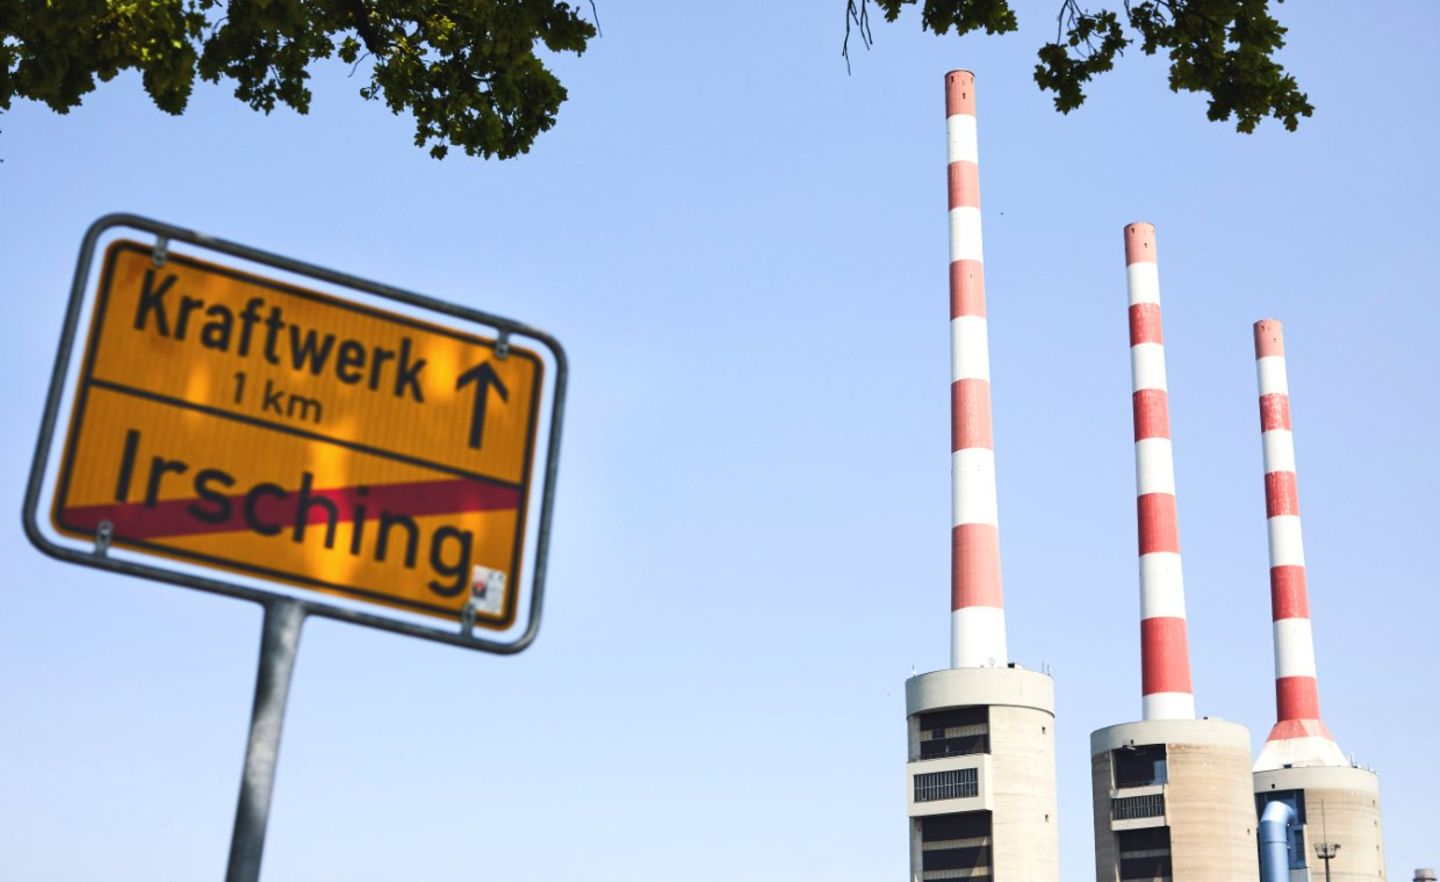 Das Gaskraftwerk Irsching in Bayern ist gut aus­geschildert, steht aber weitgehend still